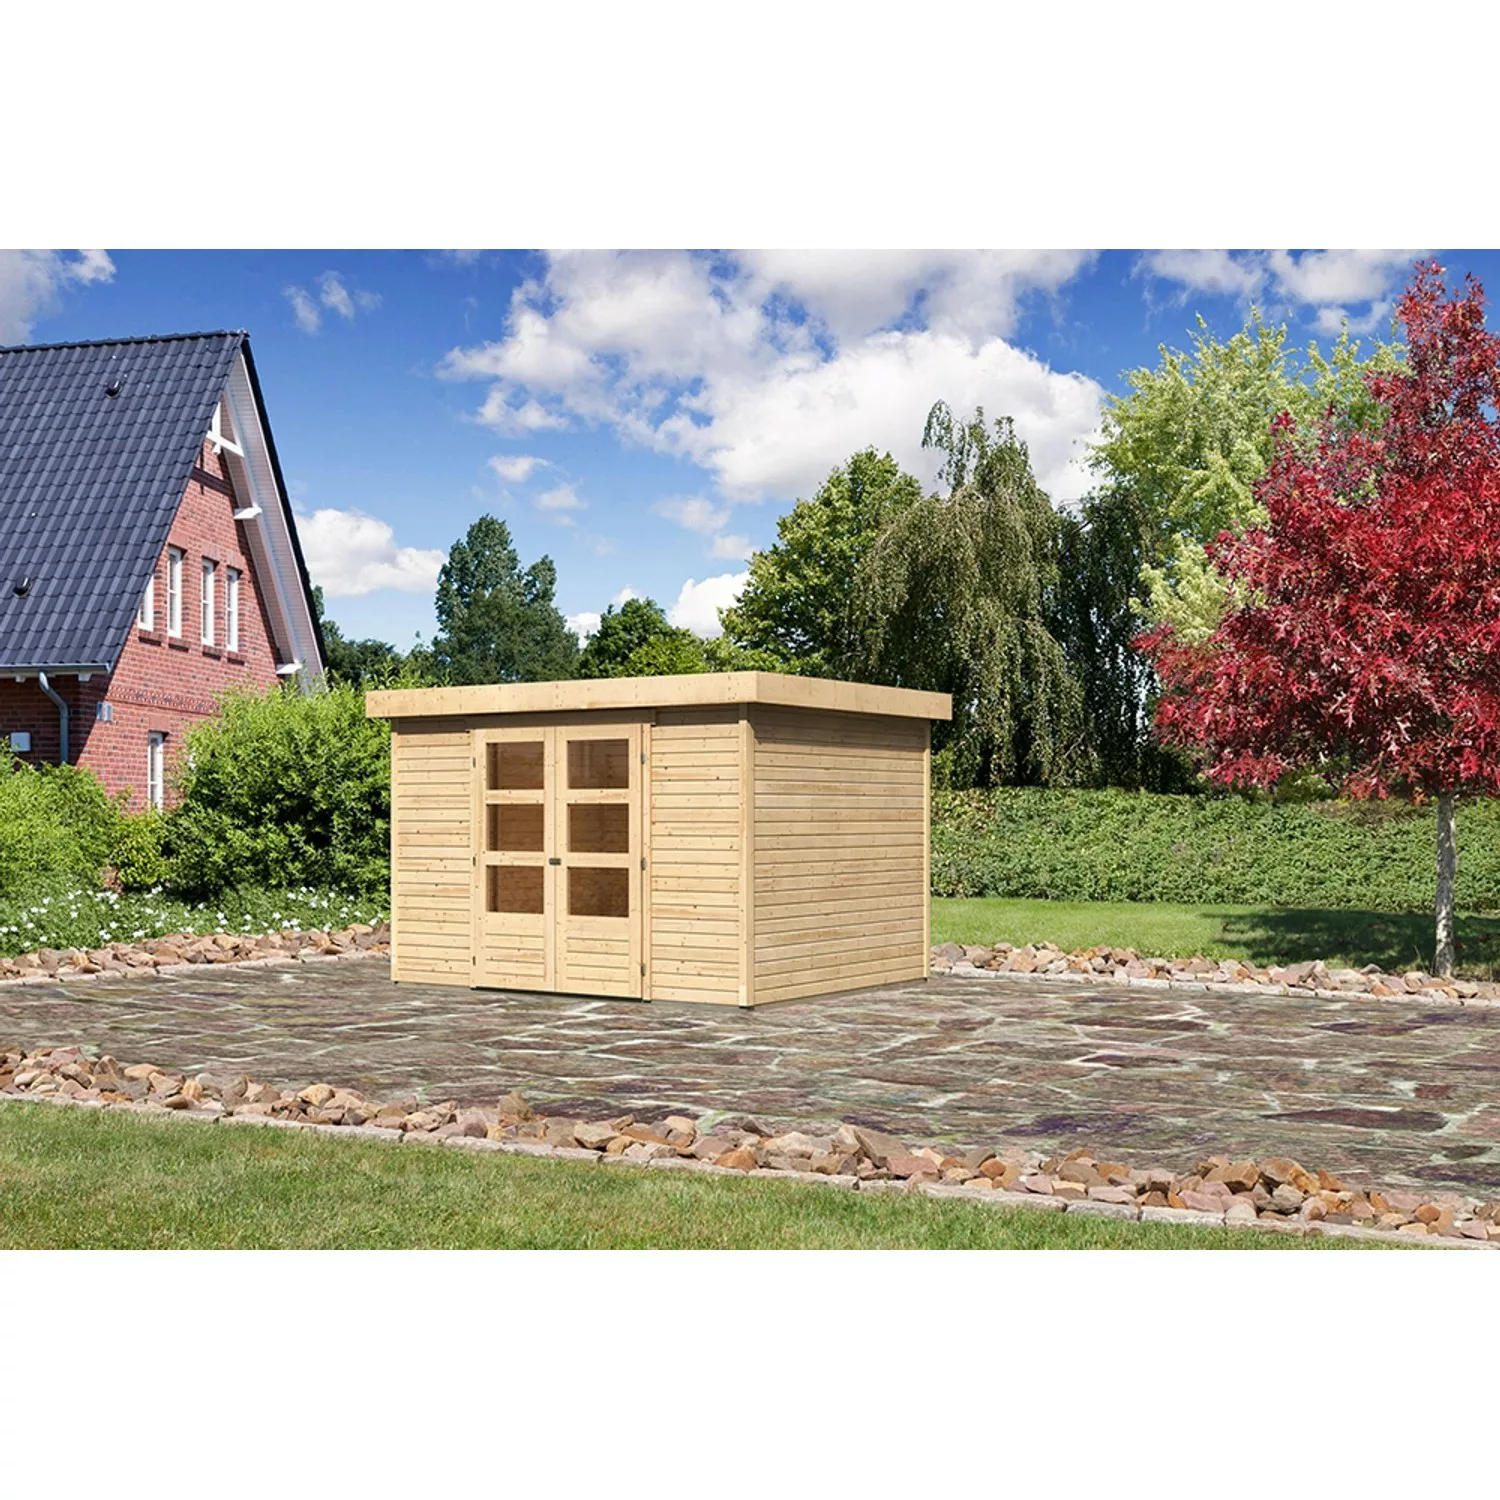 Karibu Holz-Gartenhaus Boras - Flachdach Unbehandelt 298 cm x 242 cm günstig online kaufen